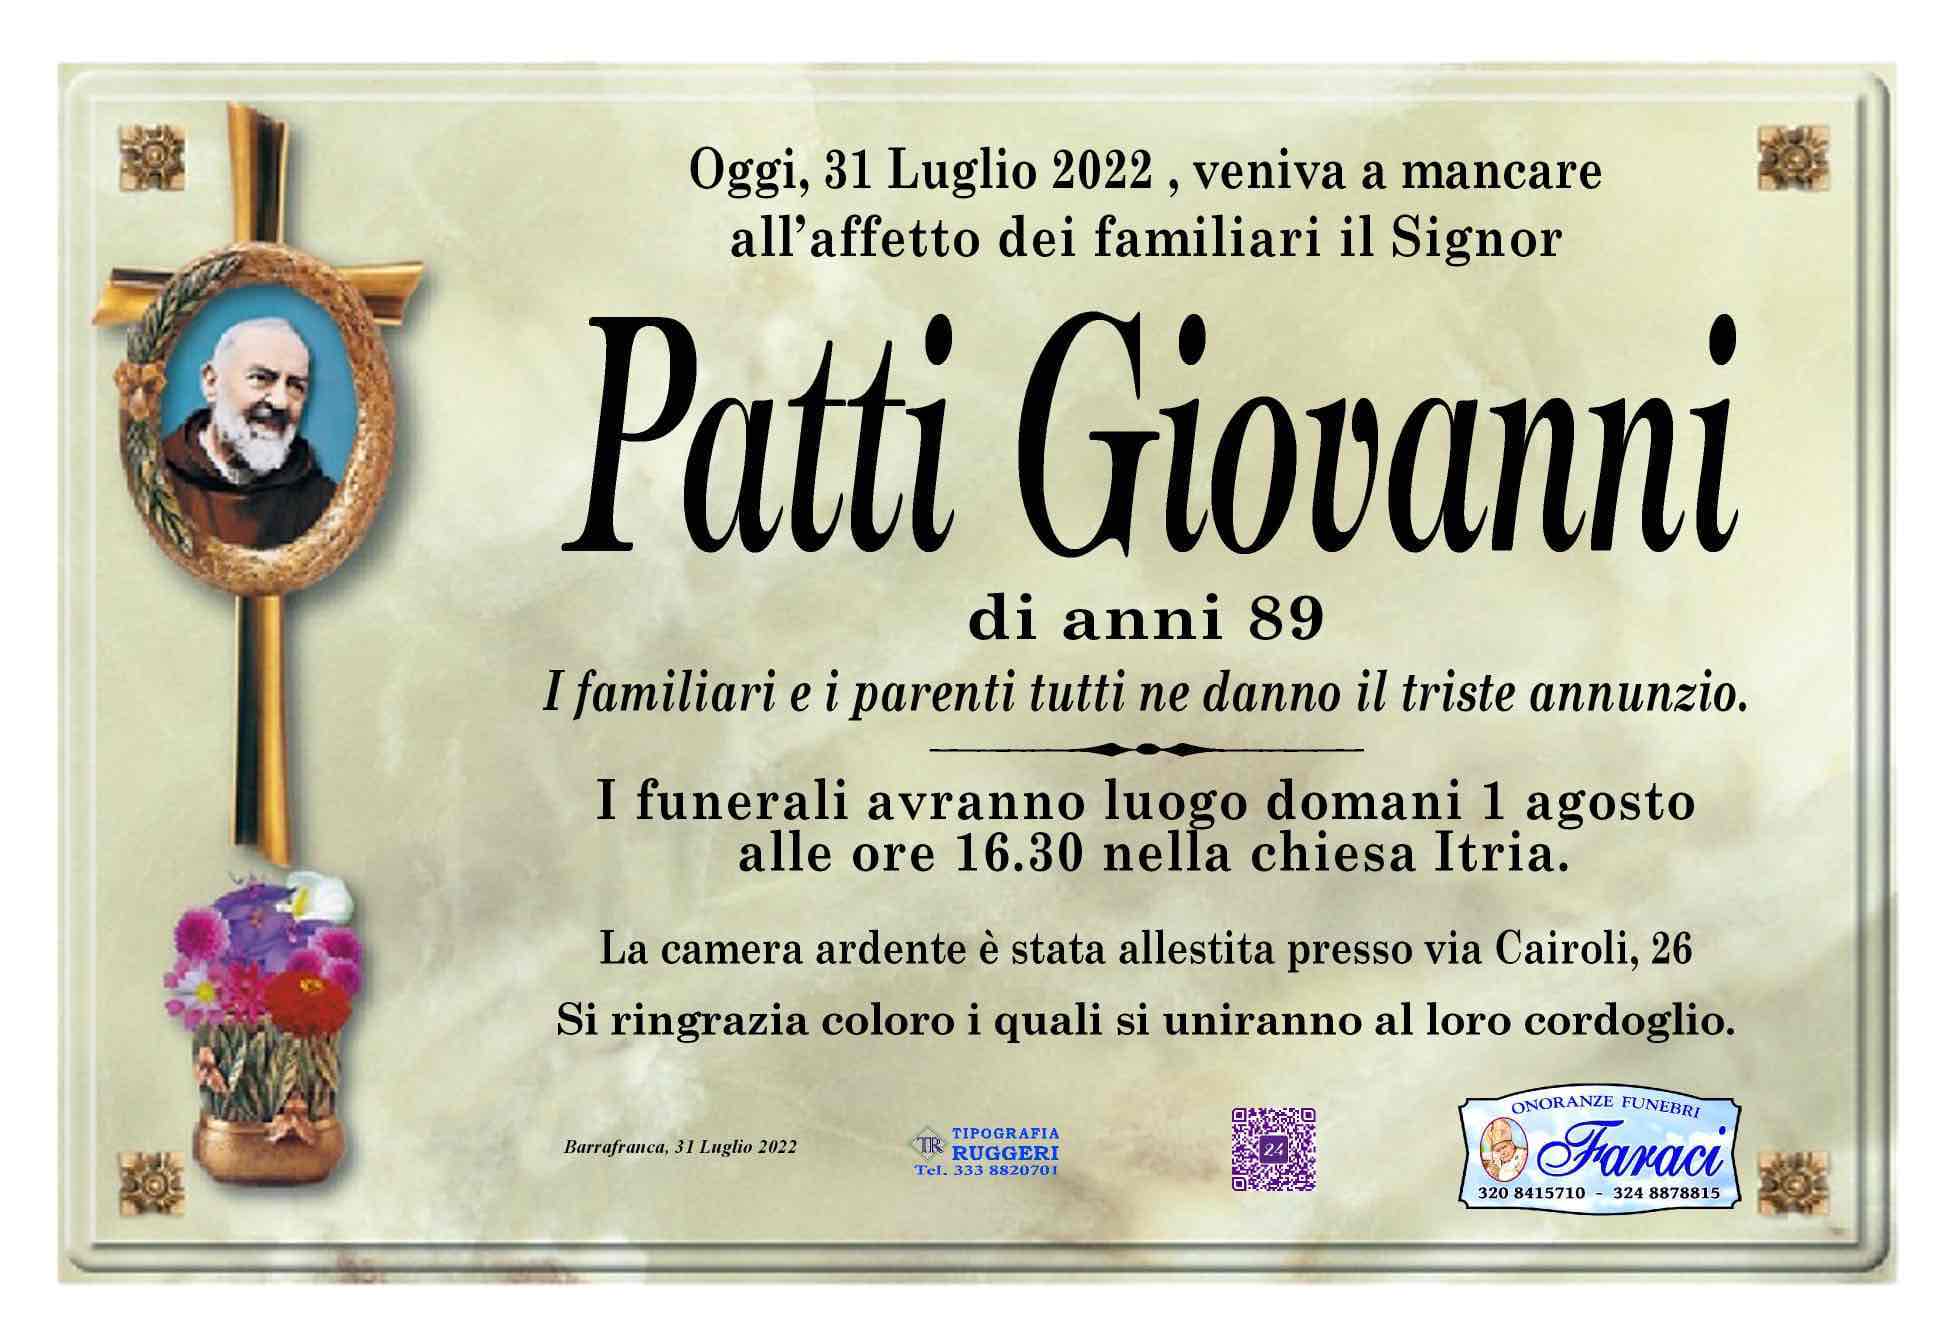 Giovanni Patti